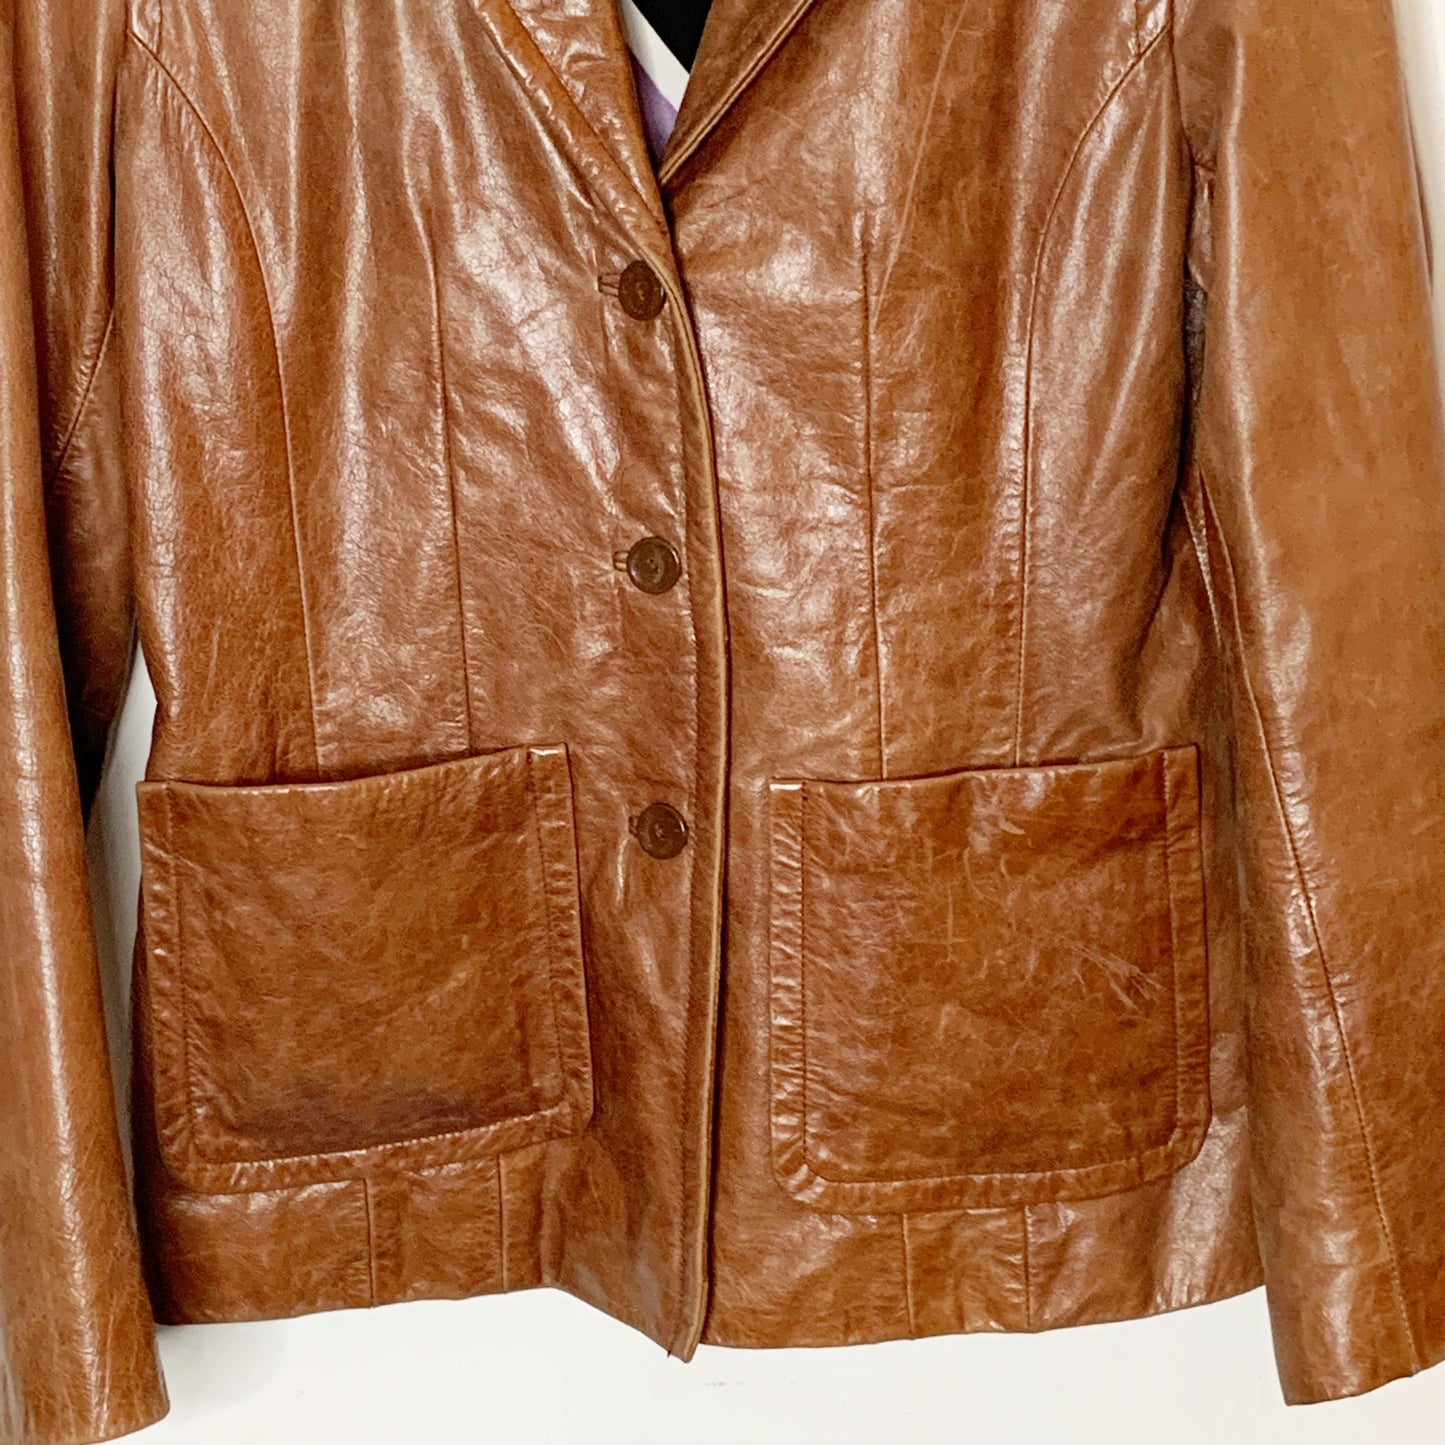 Vintage Pelle Studio Wilson’s Leather Jacket SZ M